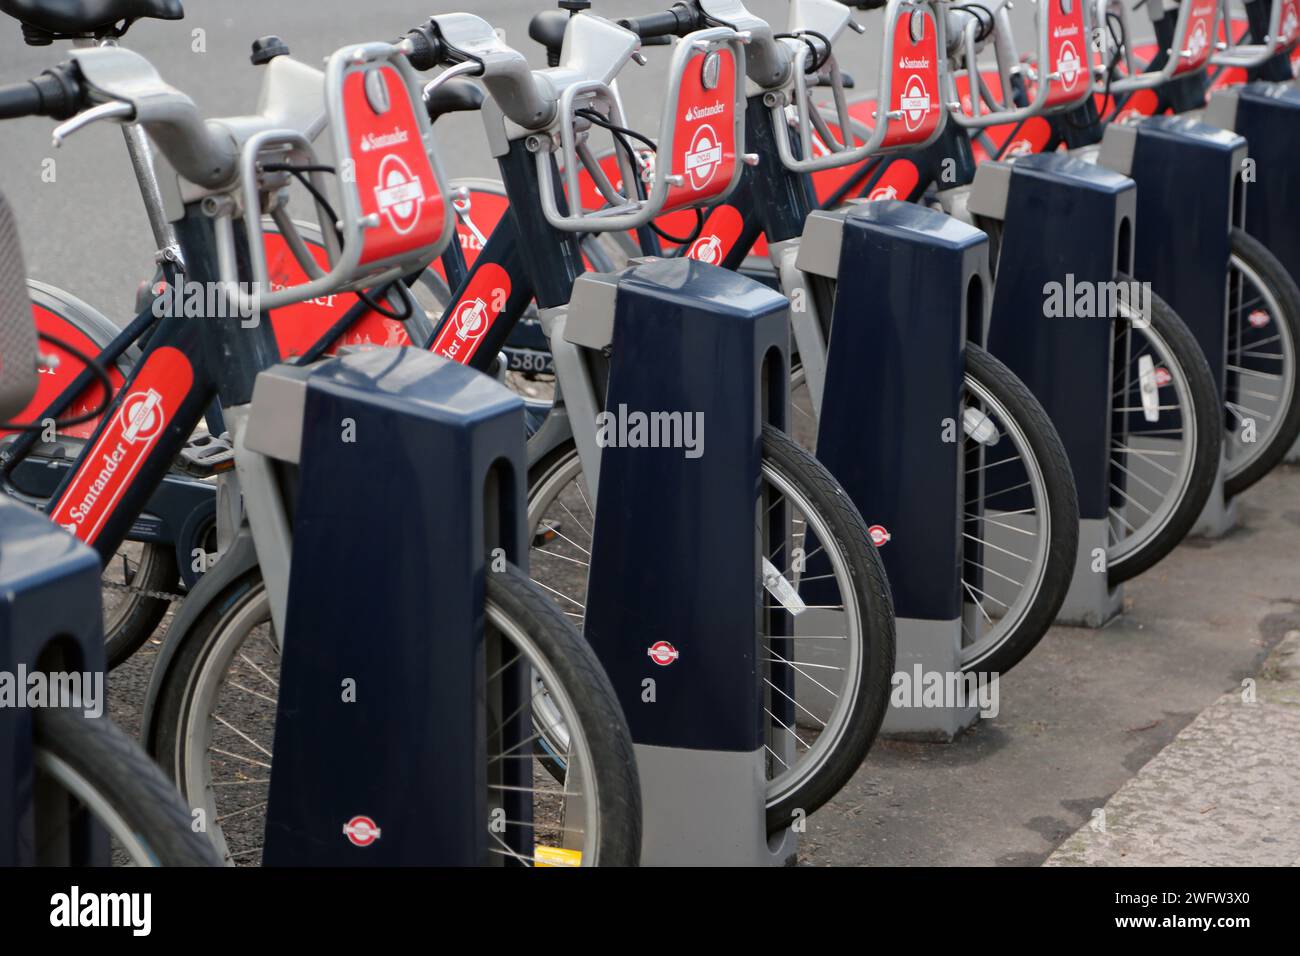 Santander cycles Programme public de location de vélos Docking Station Sydney Street Chelsea Londres Angleterre Banque D'Images